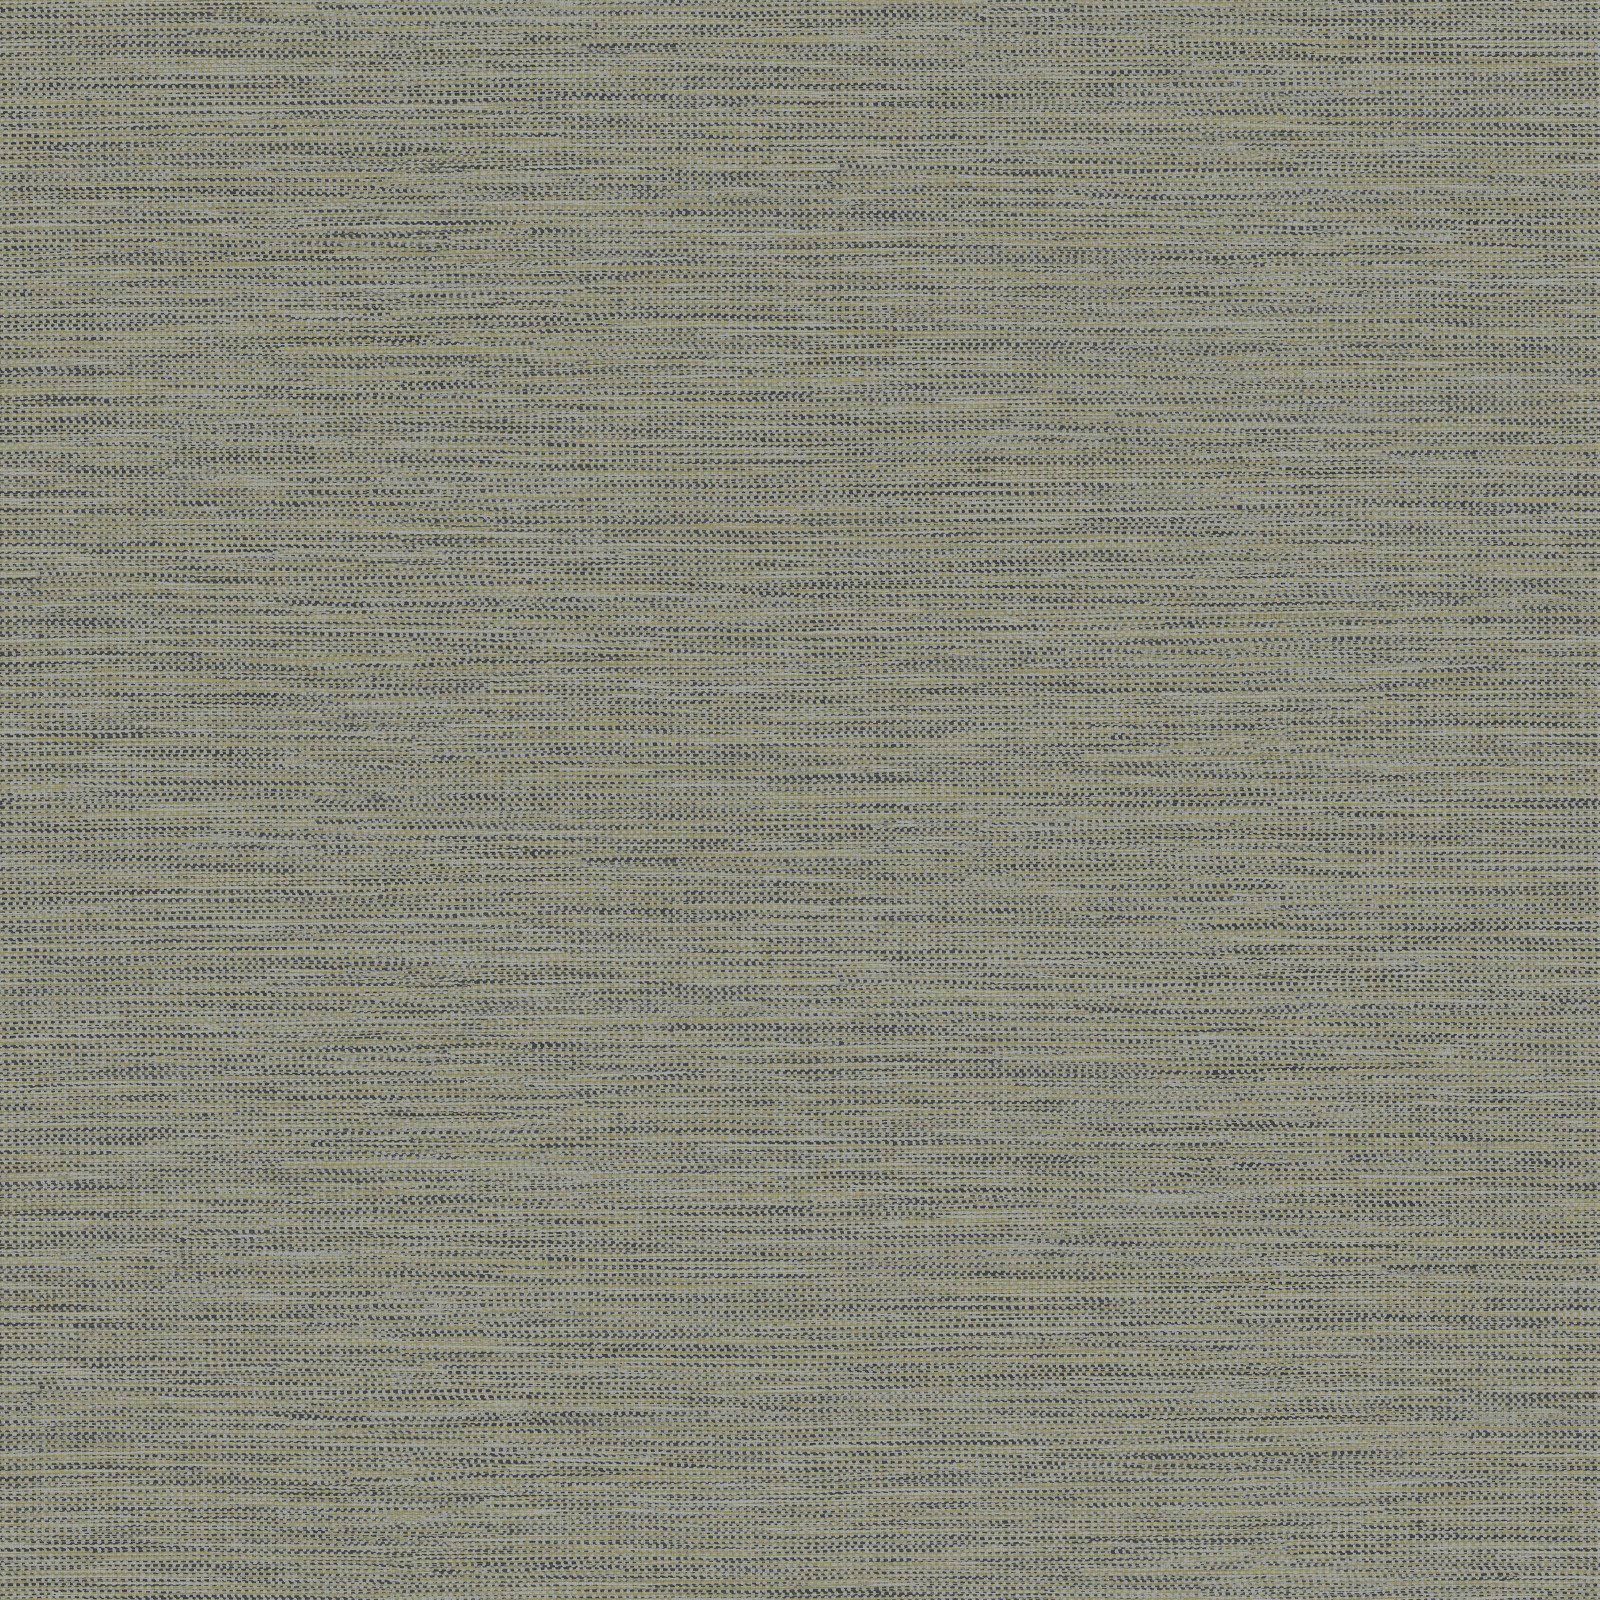 WOW Vliestapete Weaving Grau, FSC® zertifiziert, mit lebhaftem Druck, 10 Meter Länge